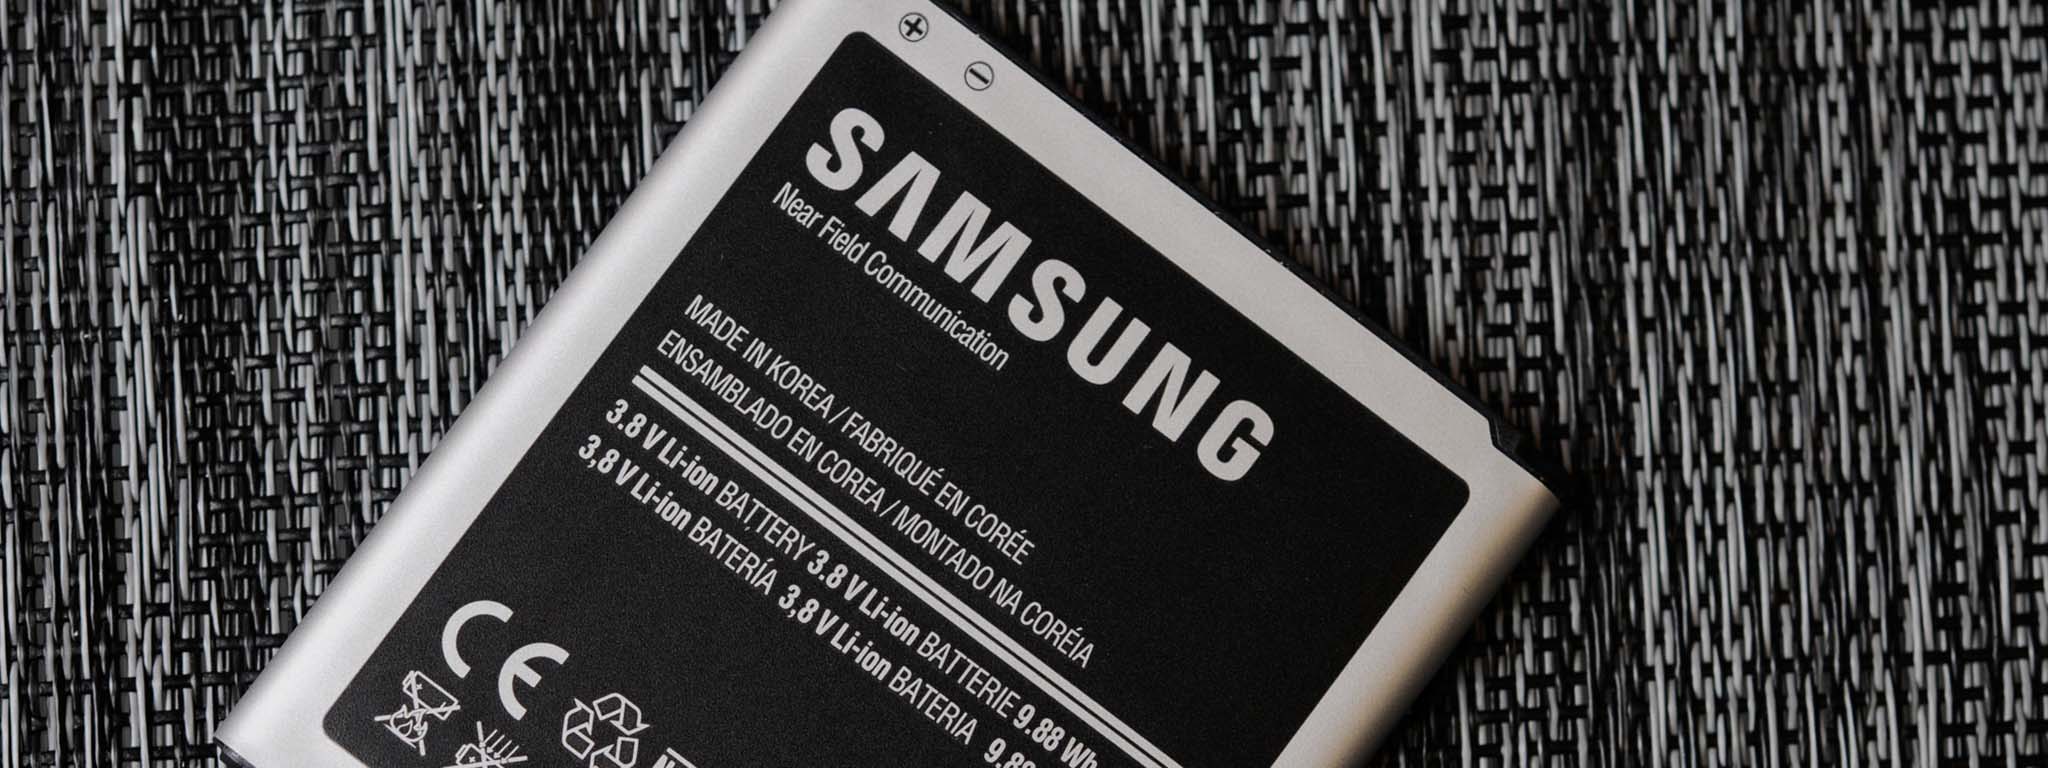 Samsung phát triển "cầu graphene" phủ 2 cực pin Li-ion, sạc nhanh hơn 5 lần, thêm 45% dung lượng